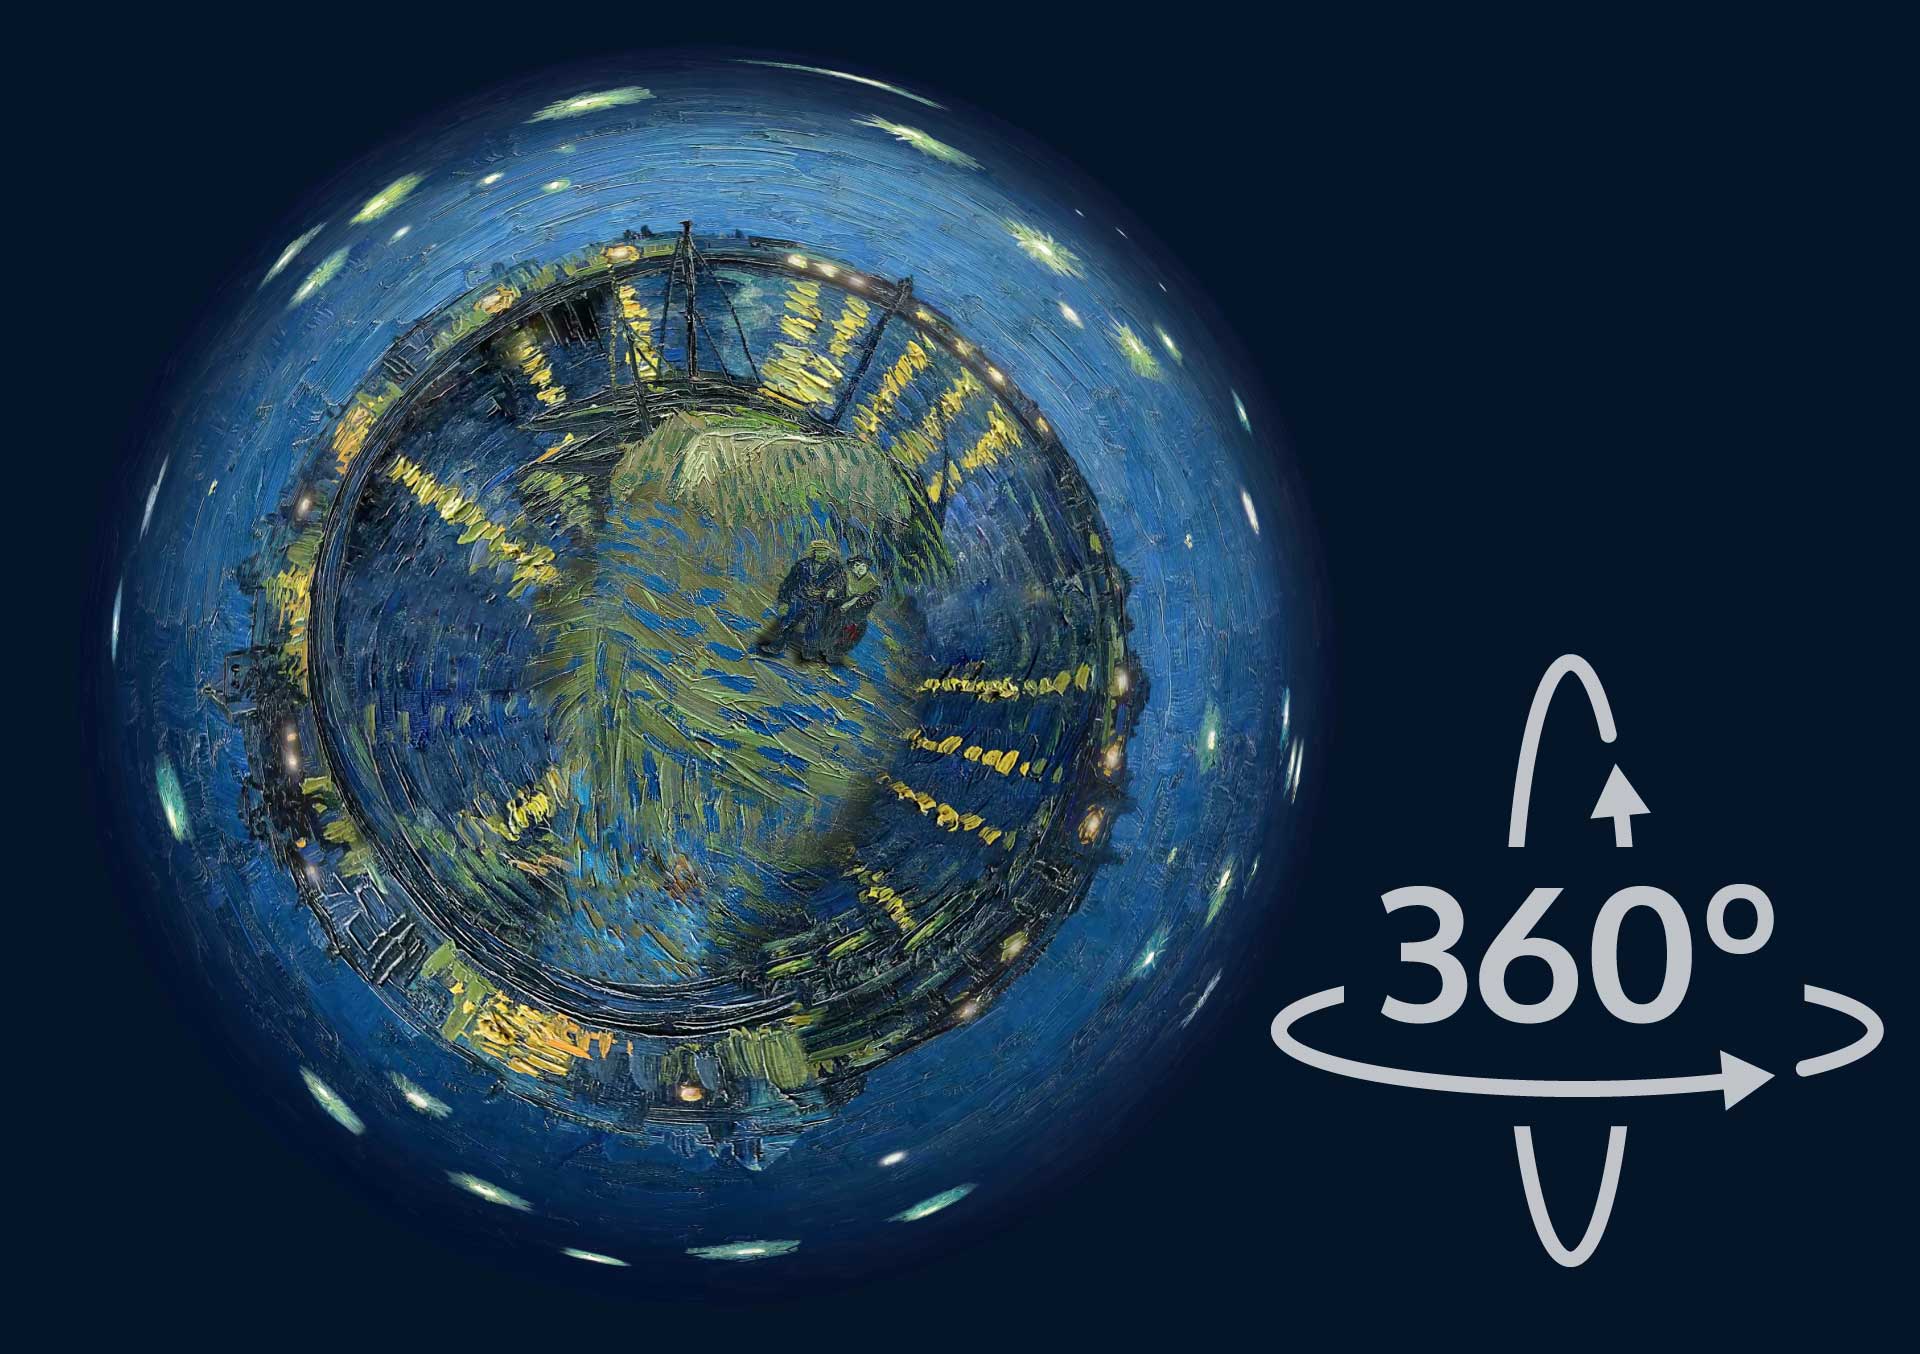 Vincent van gogh en realidad virtual-360 grados